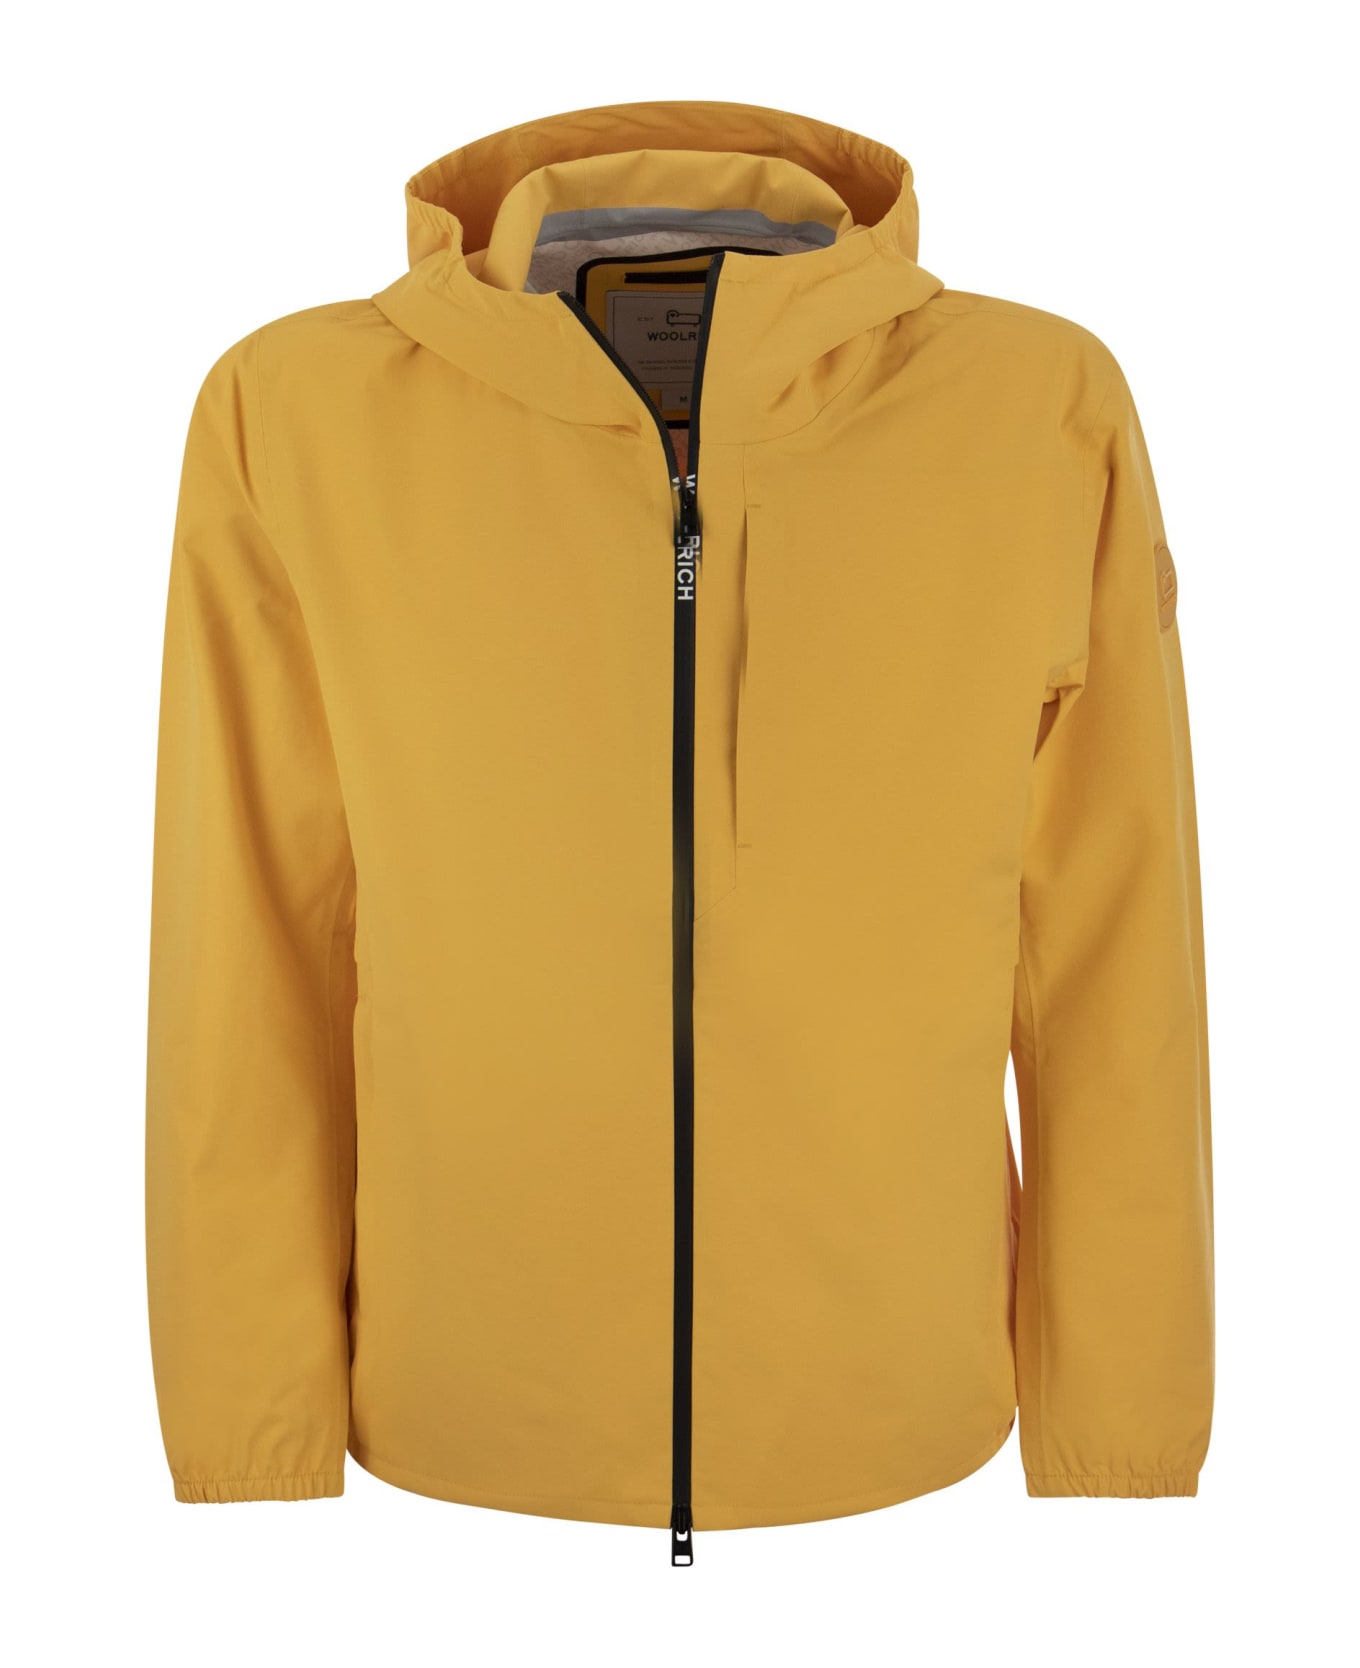 Woolrich Pacific - Waterproof Jacket With Hood - Mustard